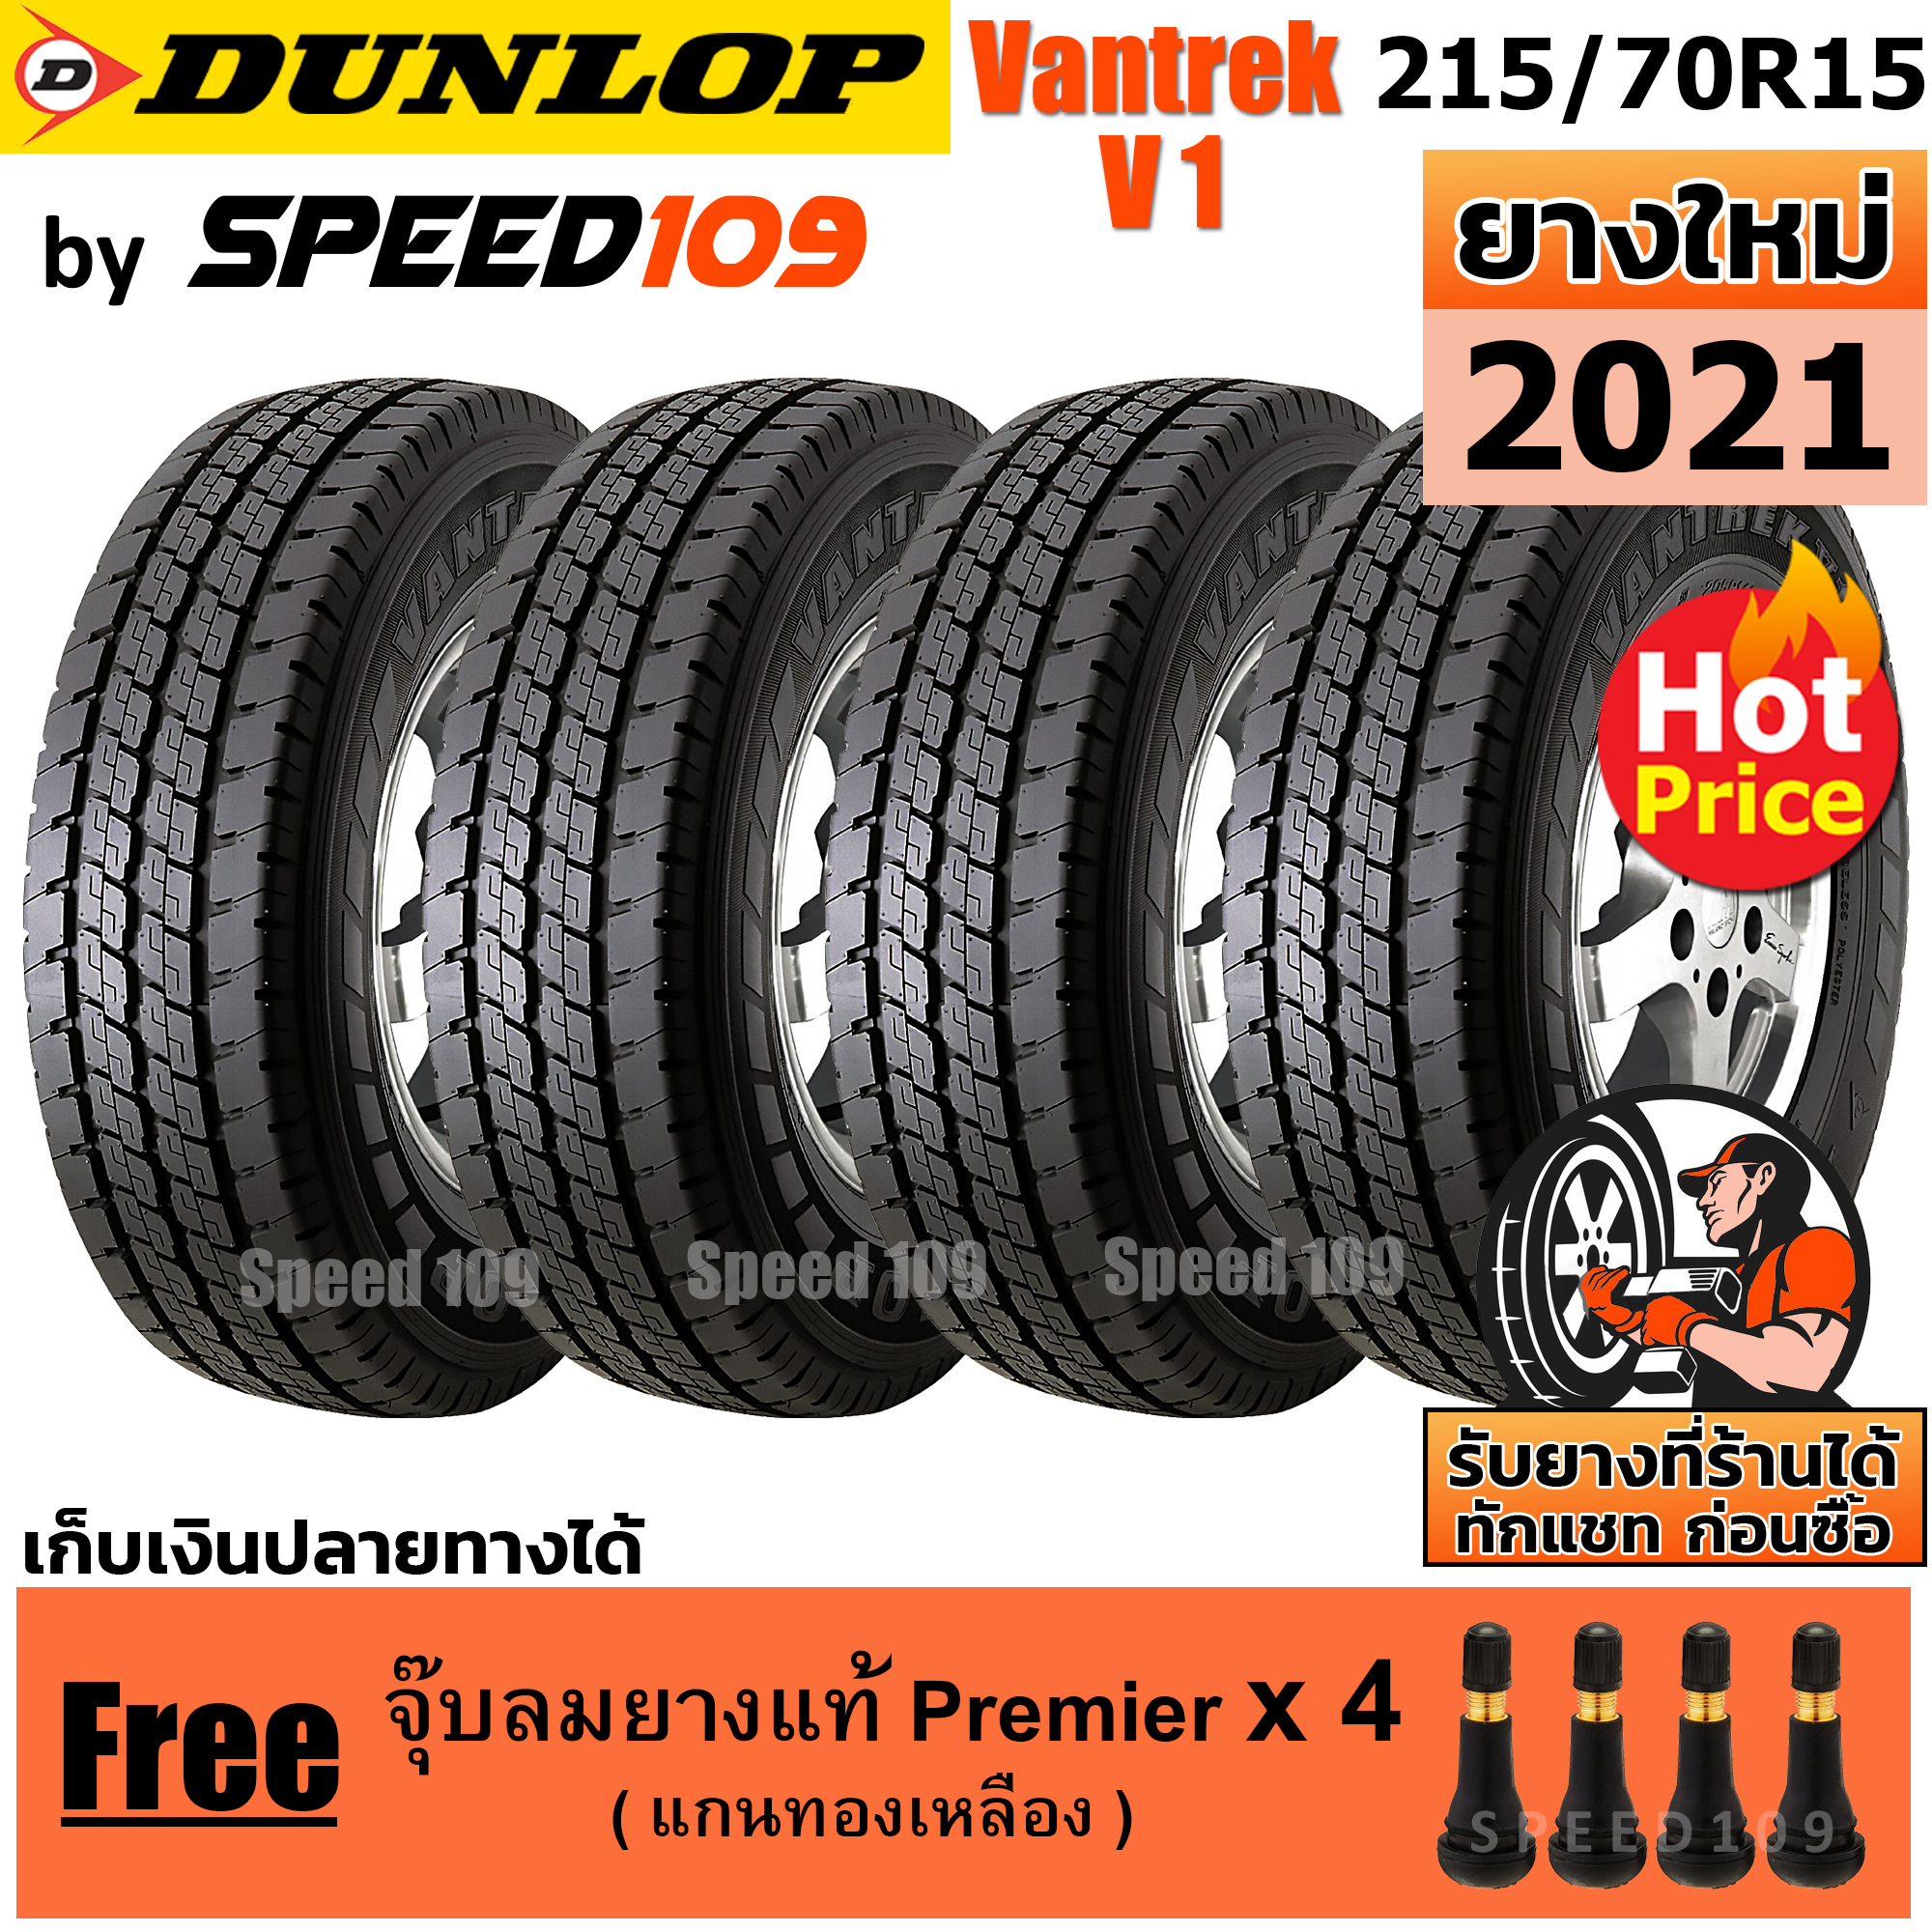 DUNLOP ยางรถยนต์ ขอบ 15 ขนาด 215/70R15 รุ่น Vantrek V1 - 4 เส้น (ปี 2021)